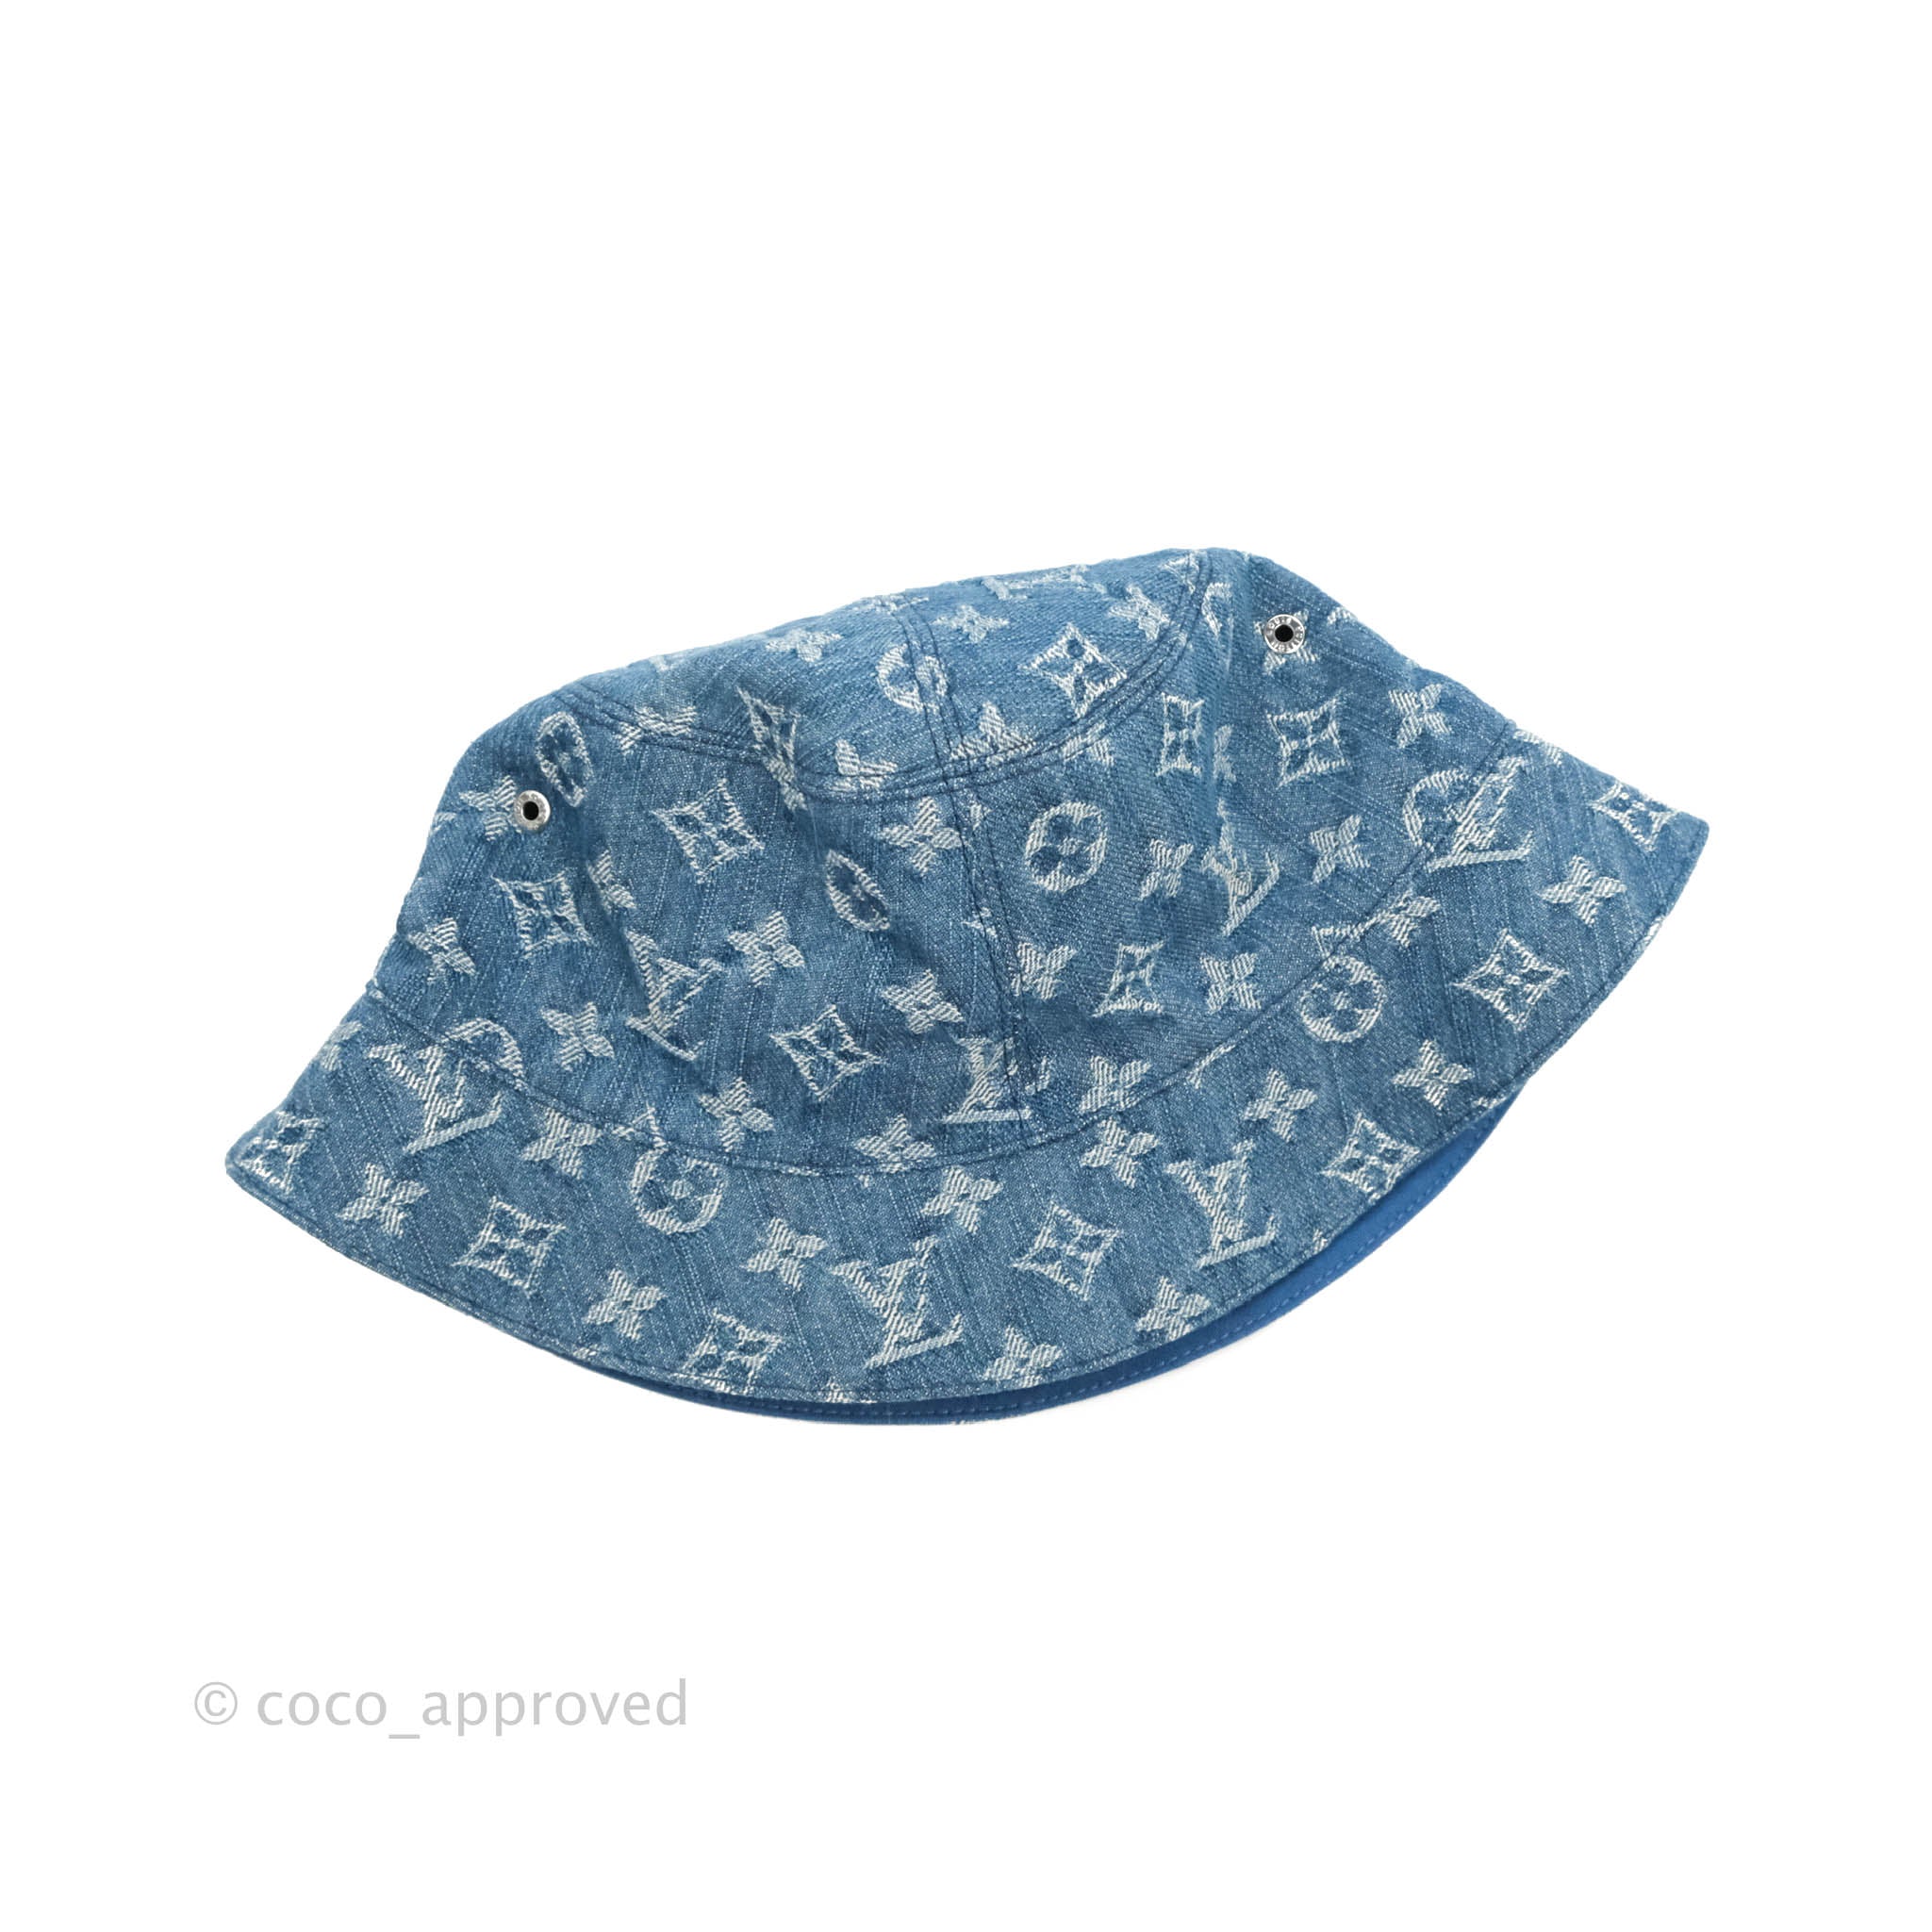 Louis Vuitton - Brown Monogram Reversible Nylon Bucket Hat – eluXive